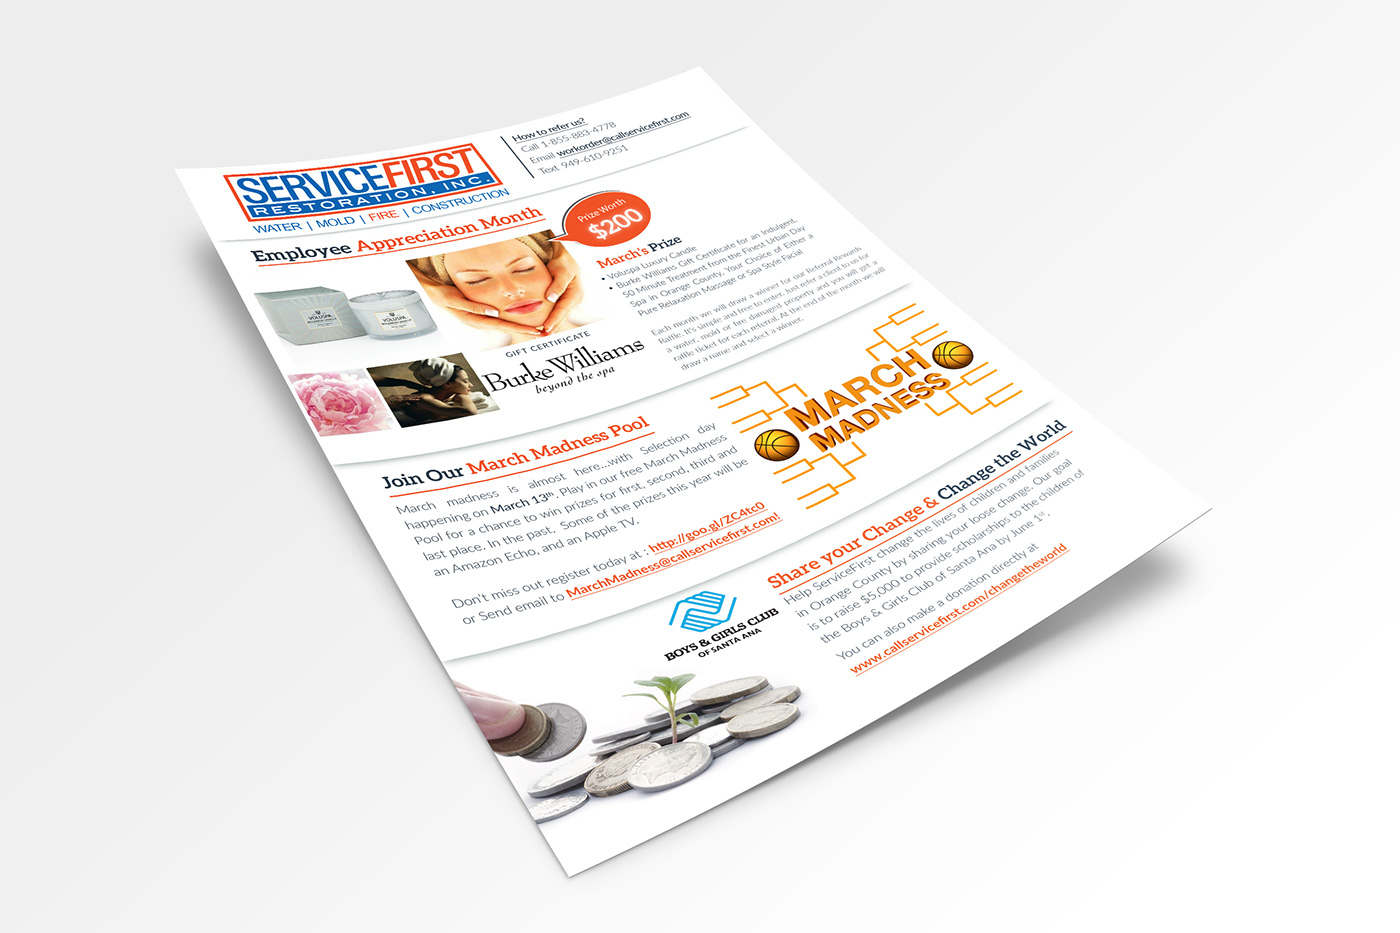 ServiceFirst flyer print graphics design restoration brochures creatrix5 Creatrix 